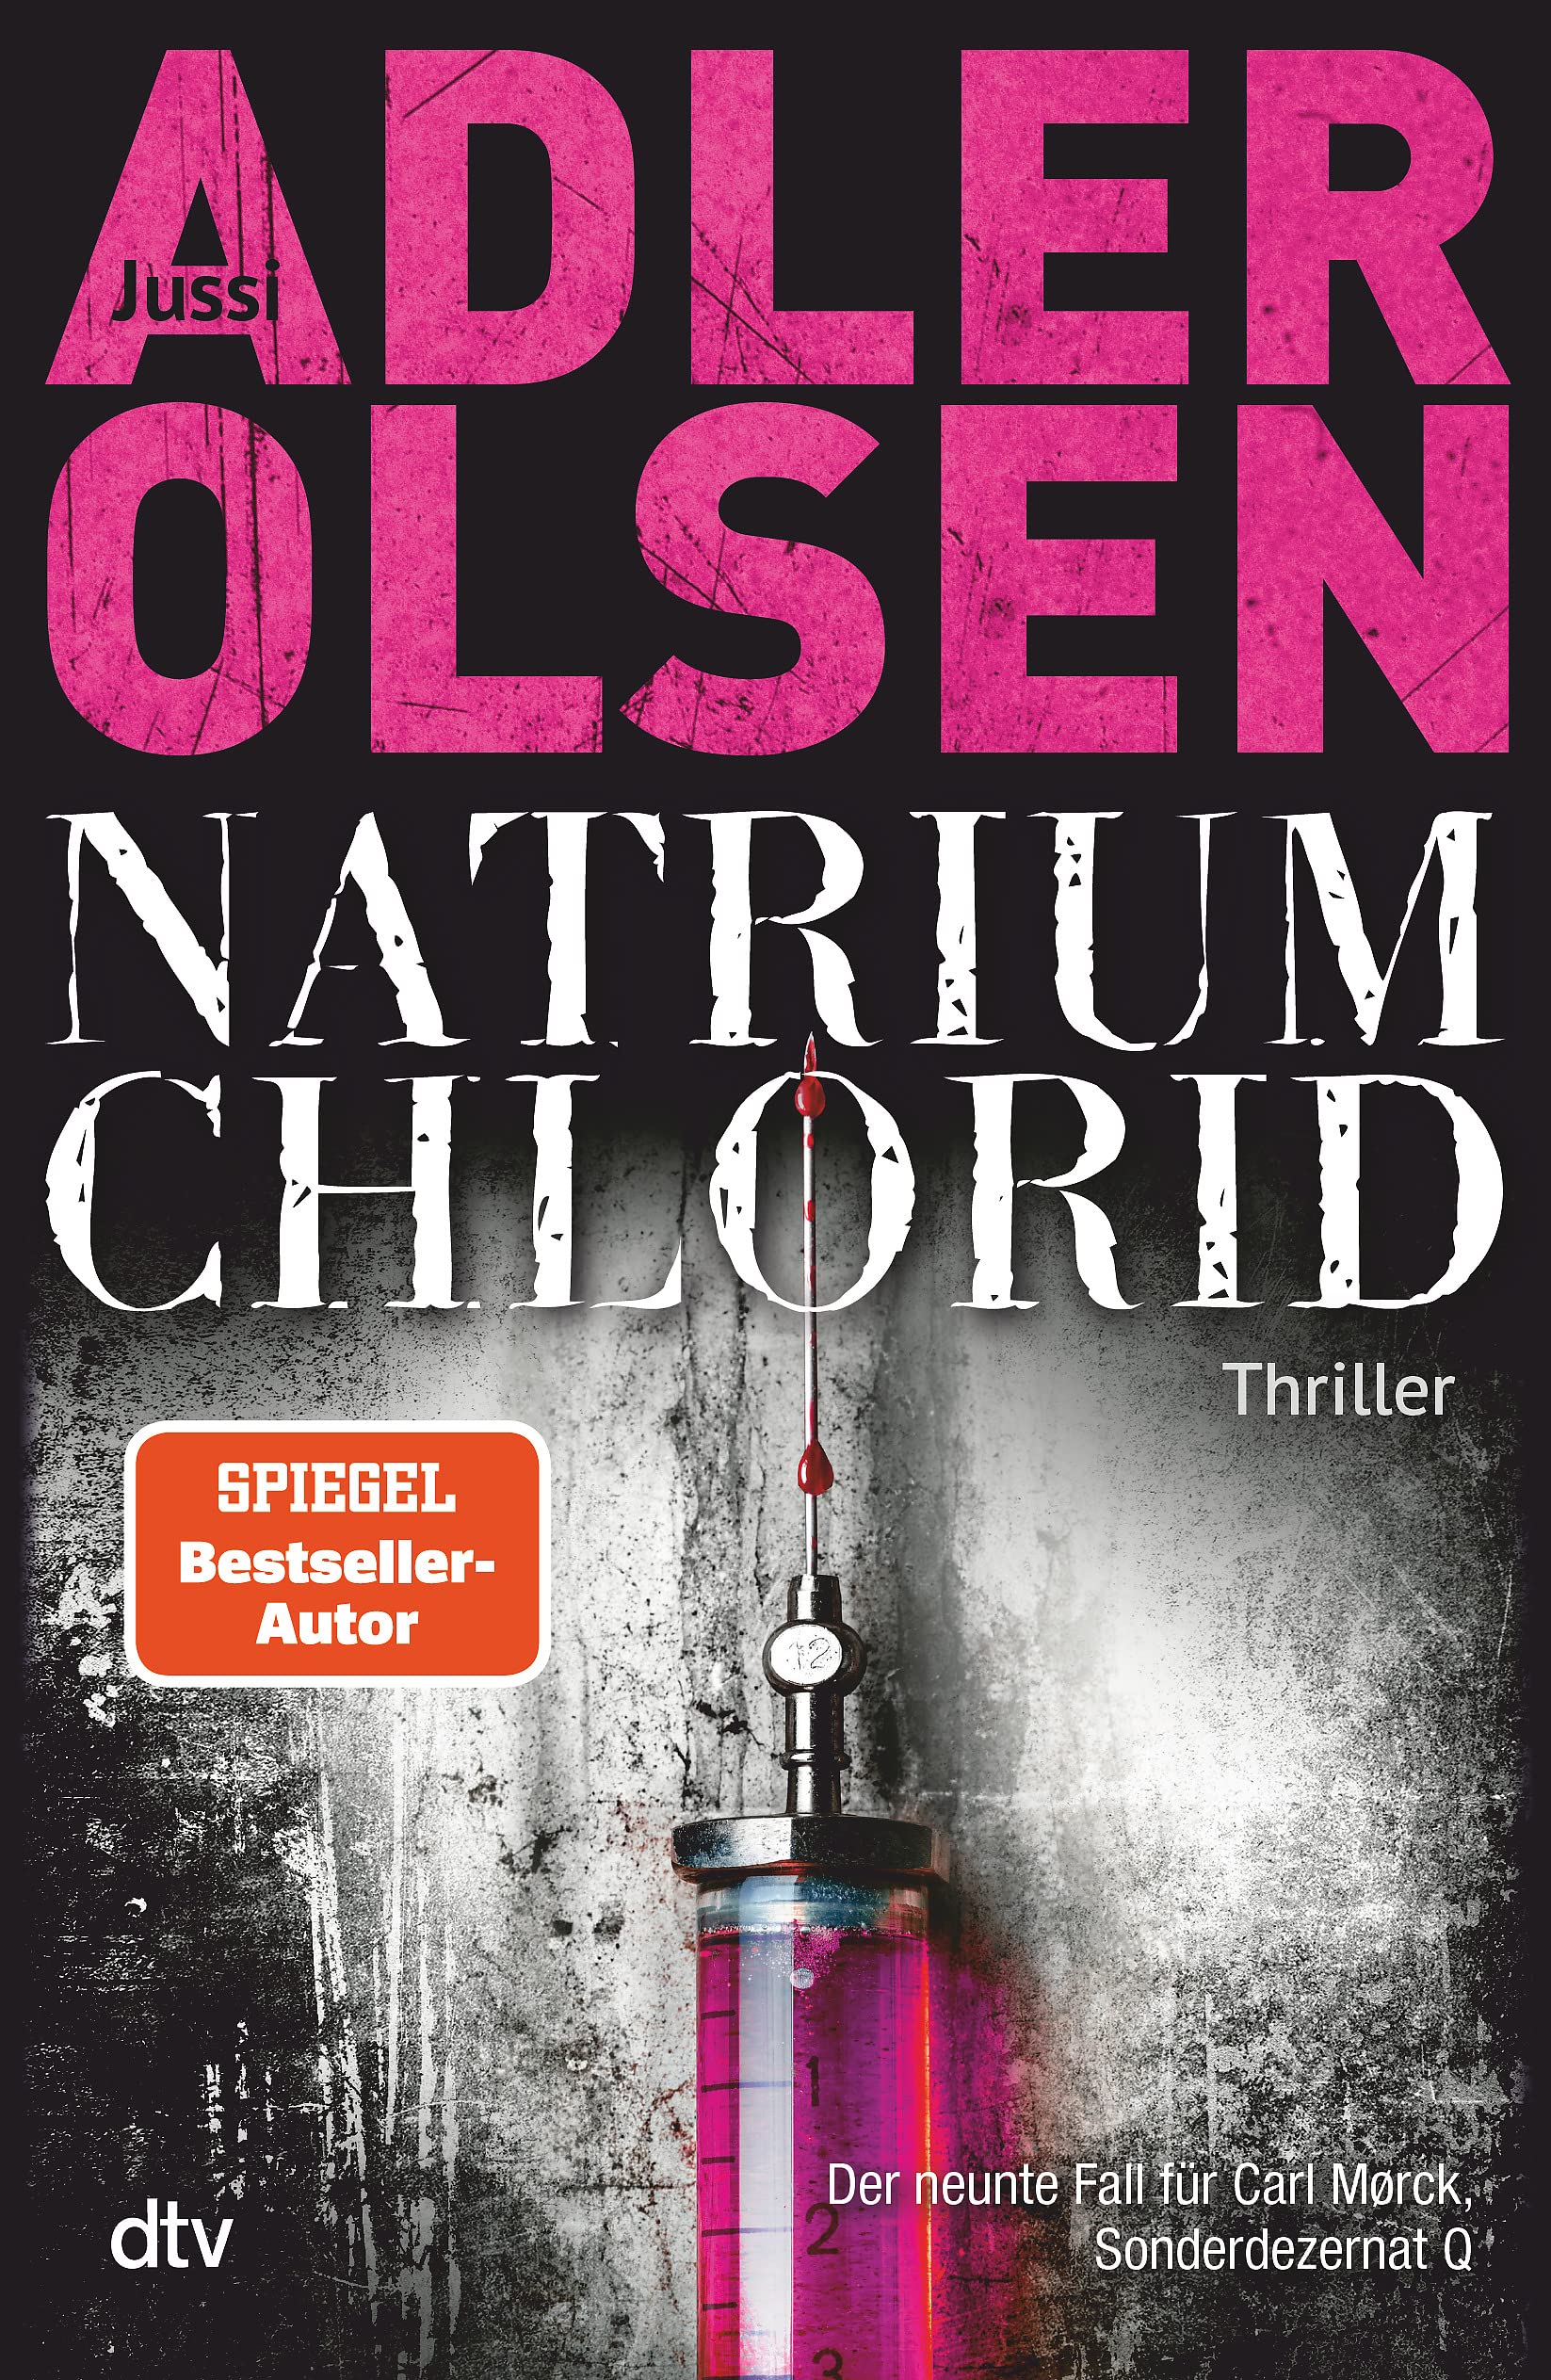 Jussi Adler-Olsen: Natrium Chlorid (Hardcover, german language, 2021, ‎ dtv Verlagsgesellschaft mbH & Co. KG)